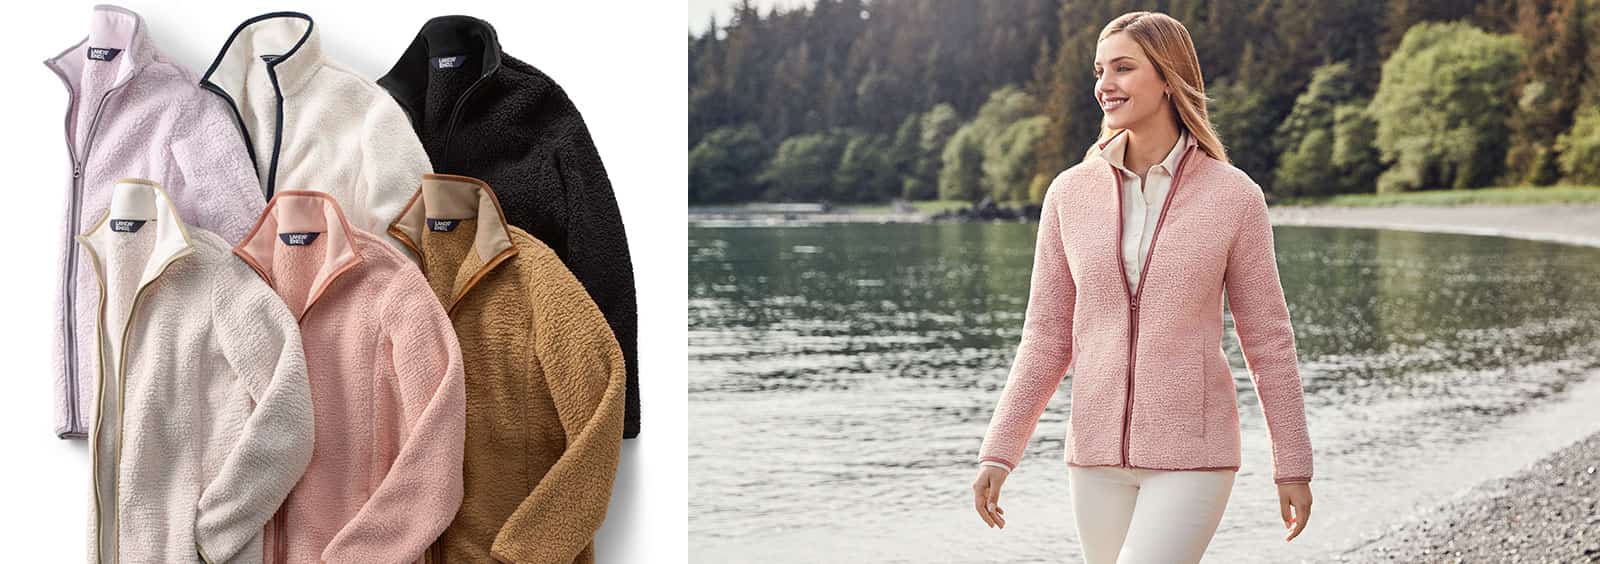 Which fleece is warmer?